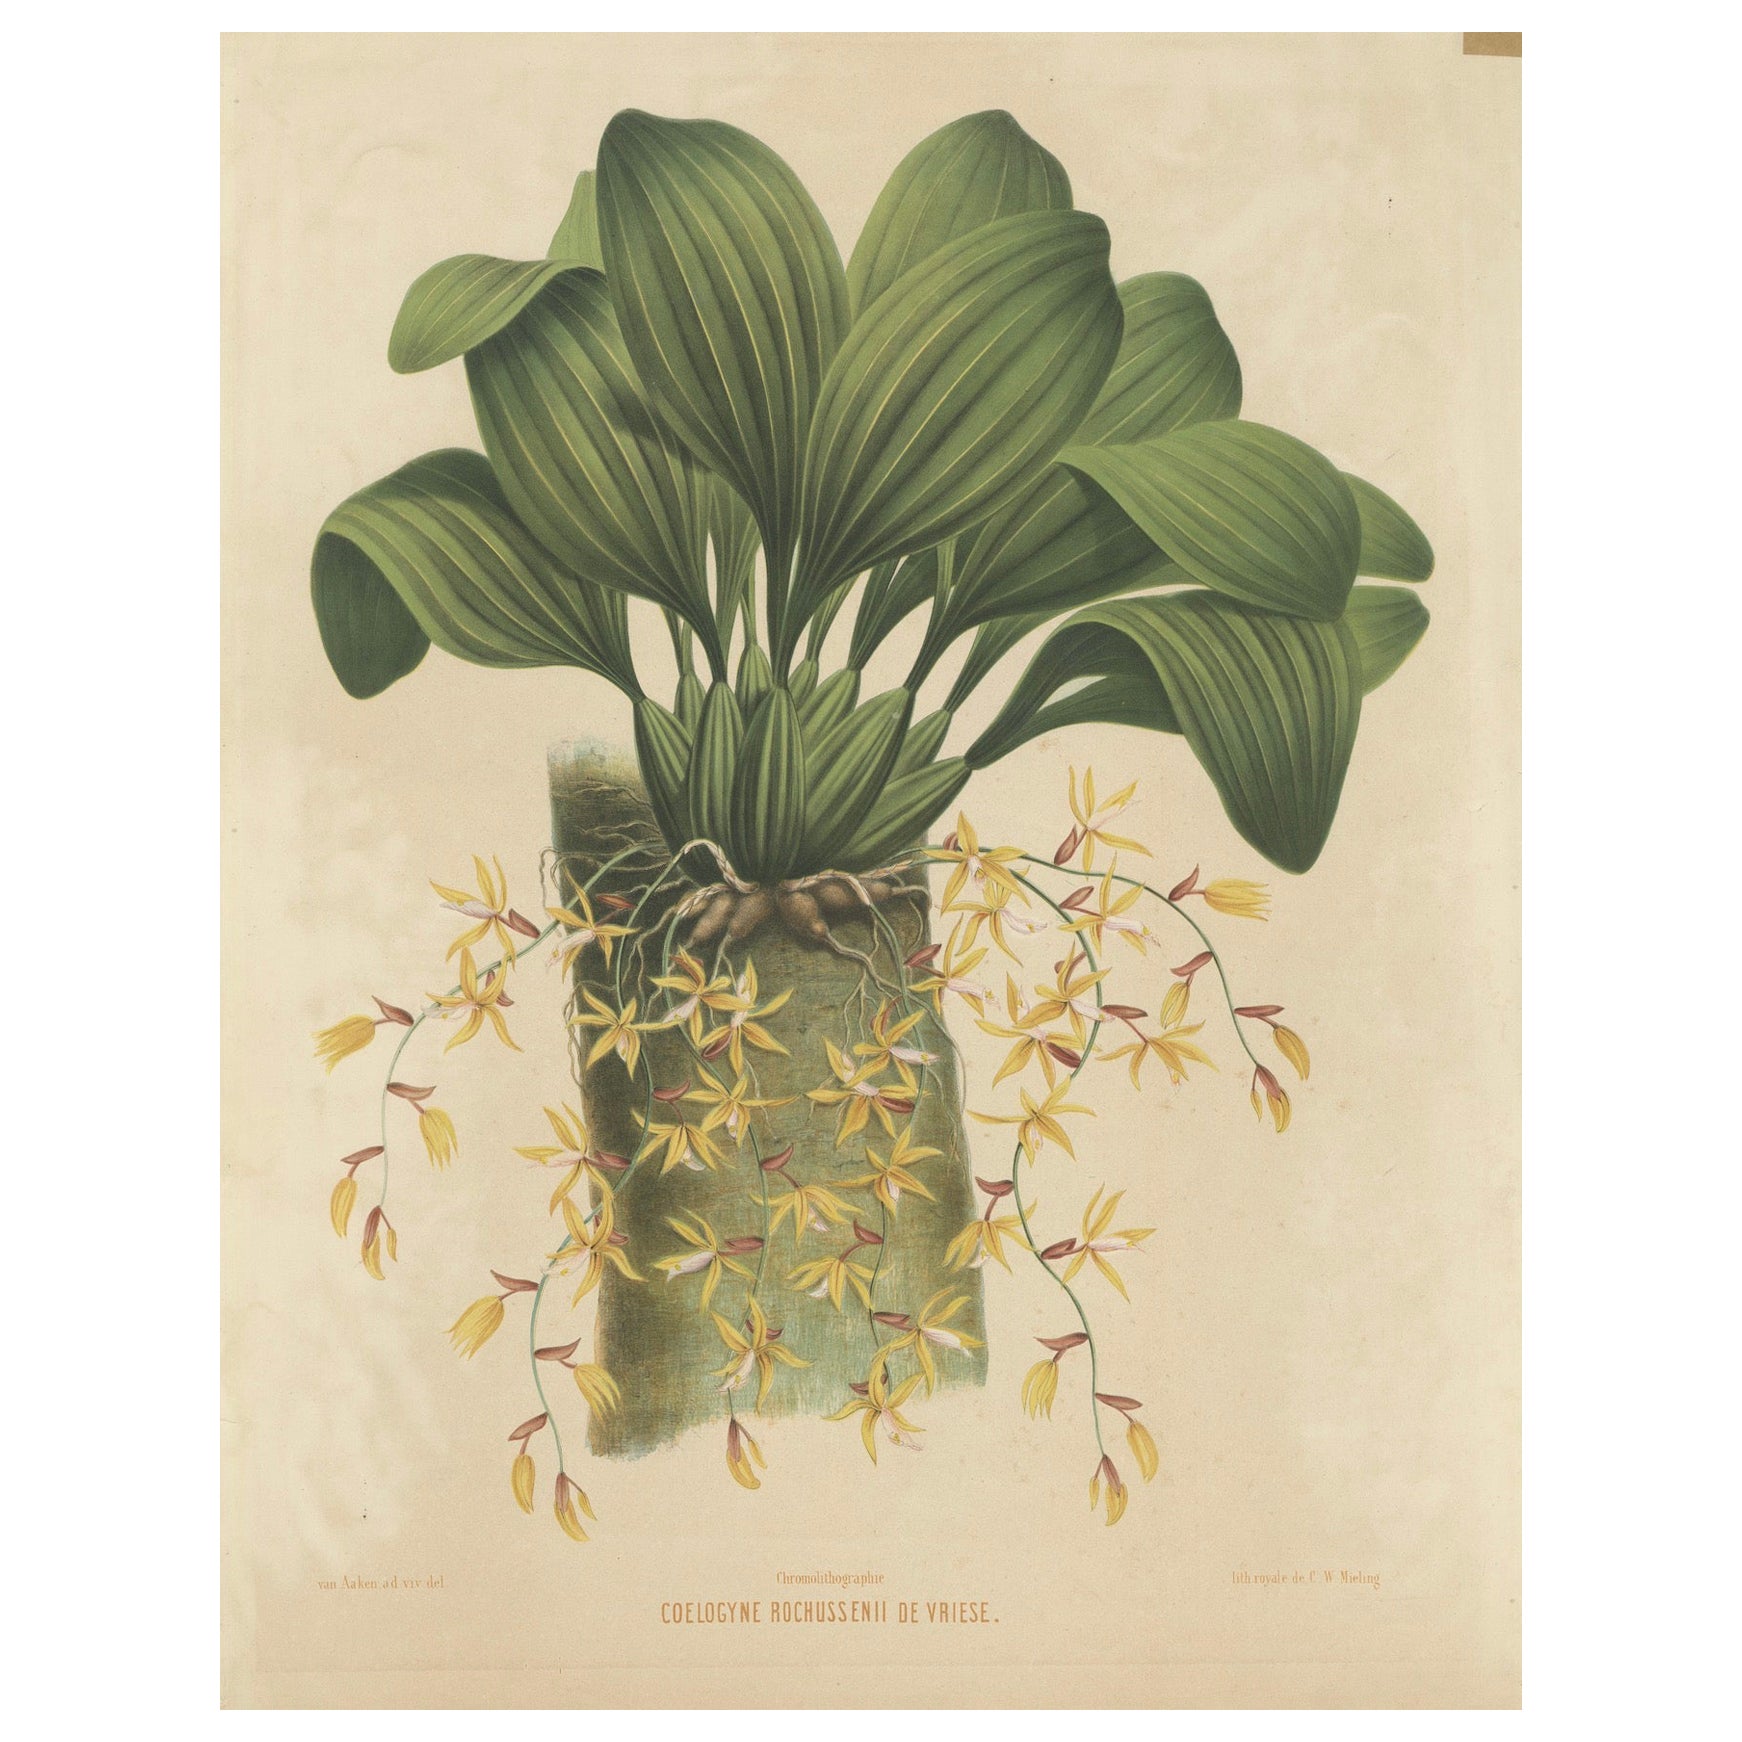 Große Orchideenillustrationen der niederländischen Ostindischen Inseln: Ein botanisches Erbe, 1854